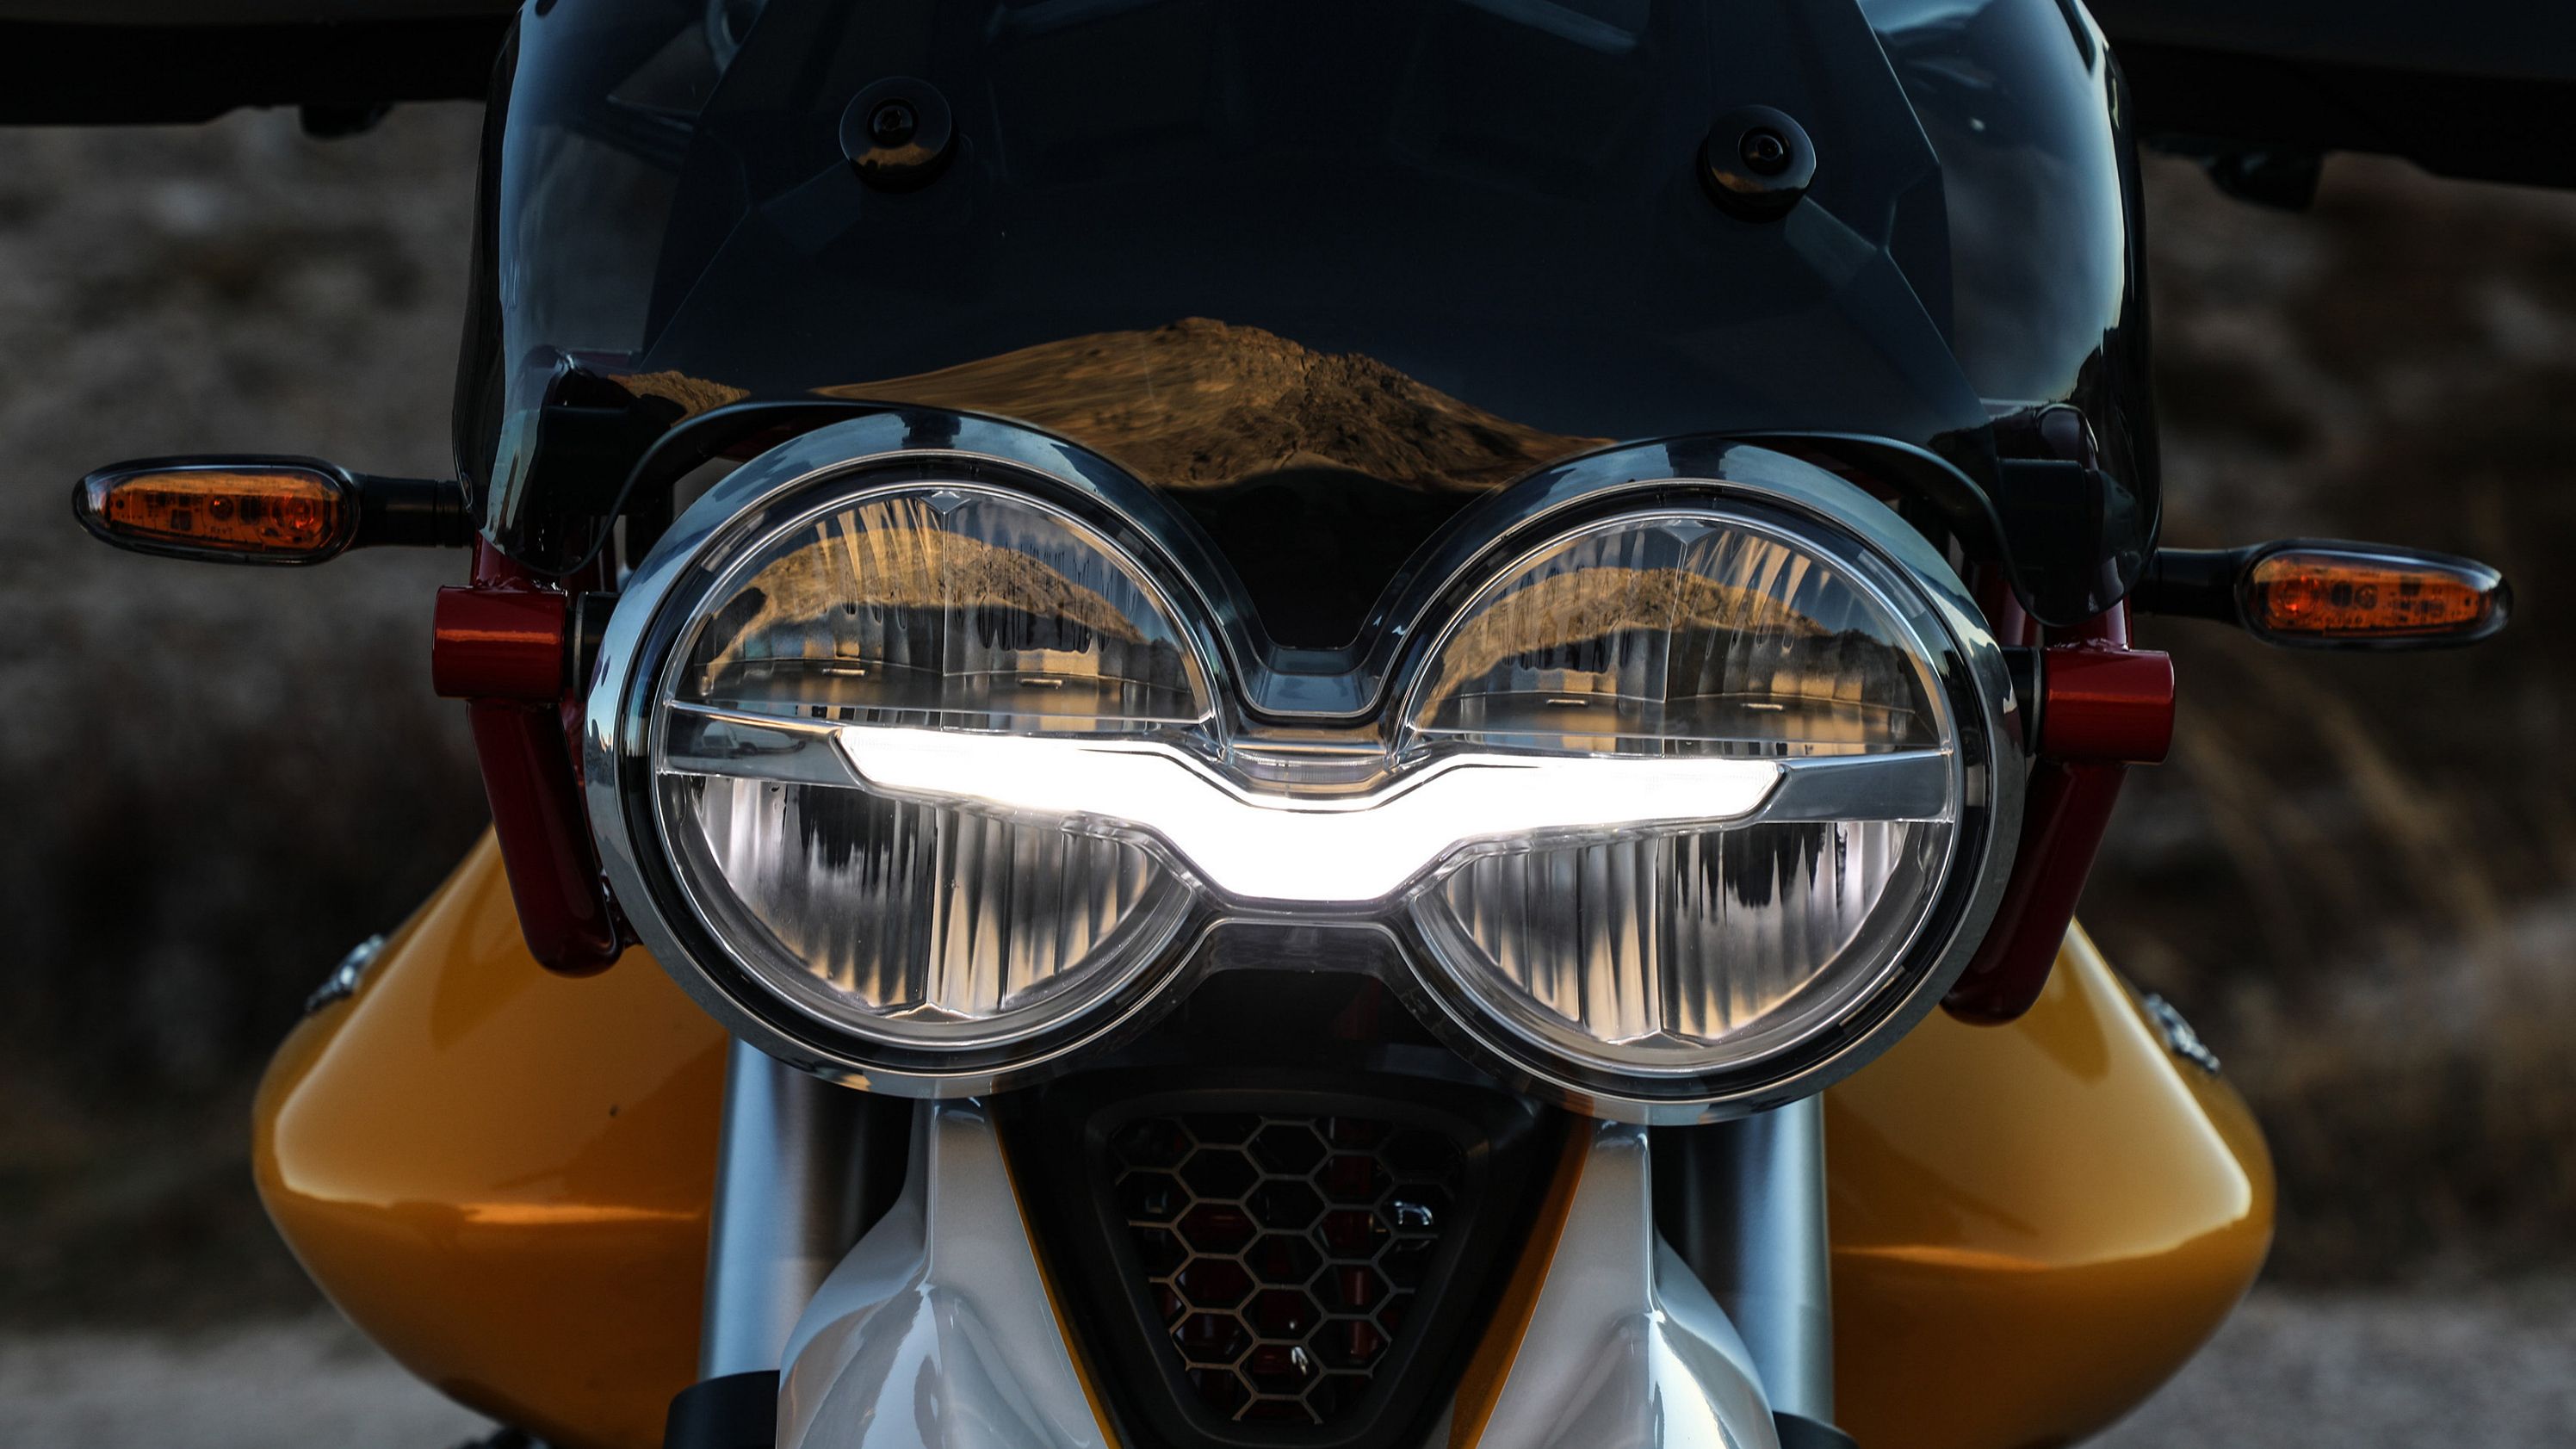 2019 Moto Guzzi V85 TT / TT Adventure